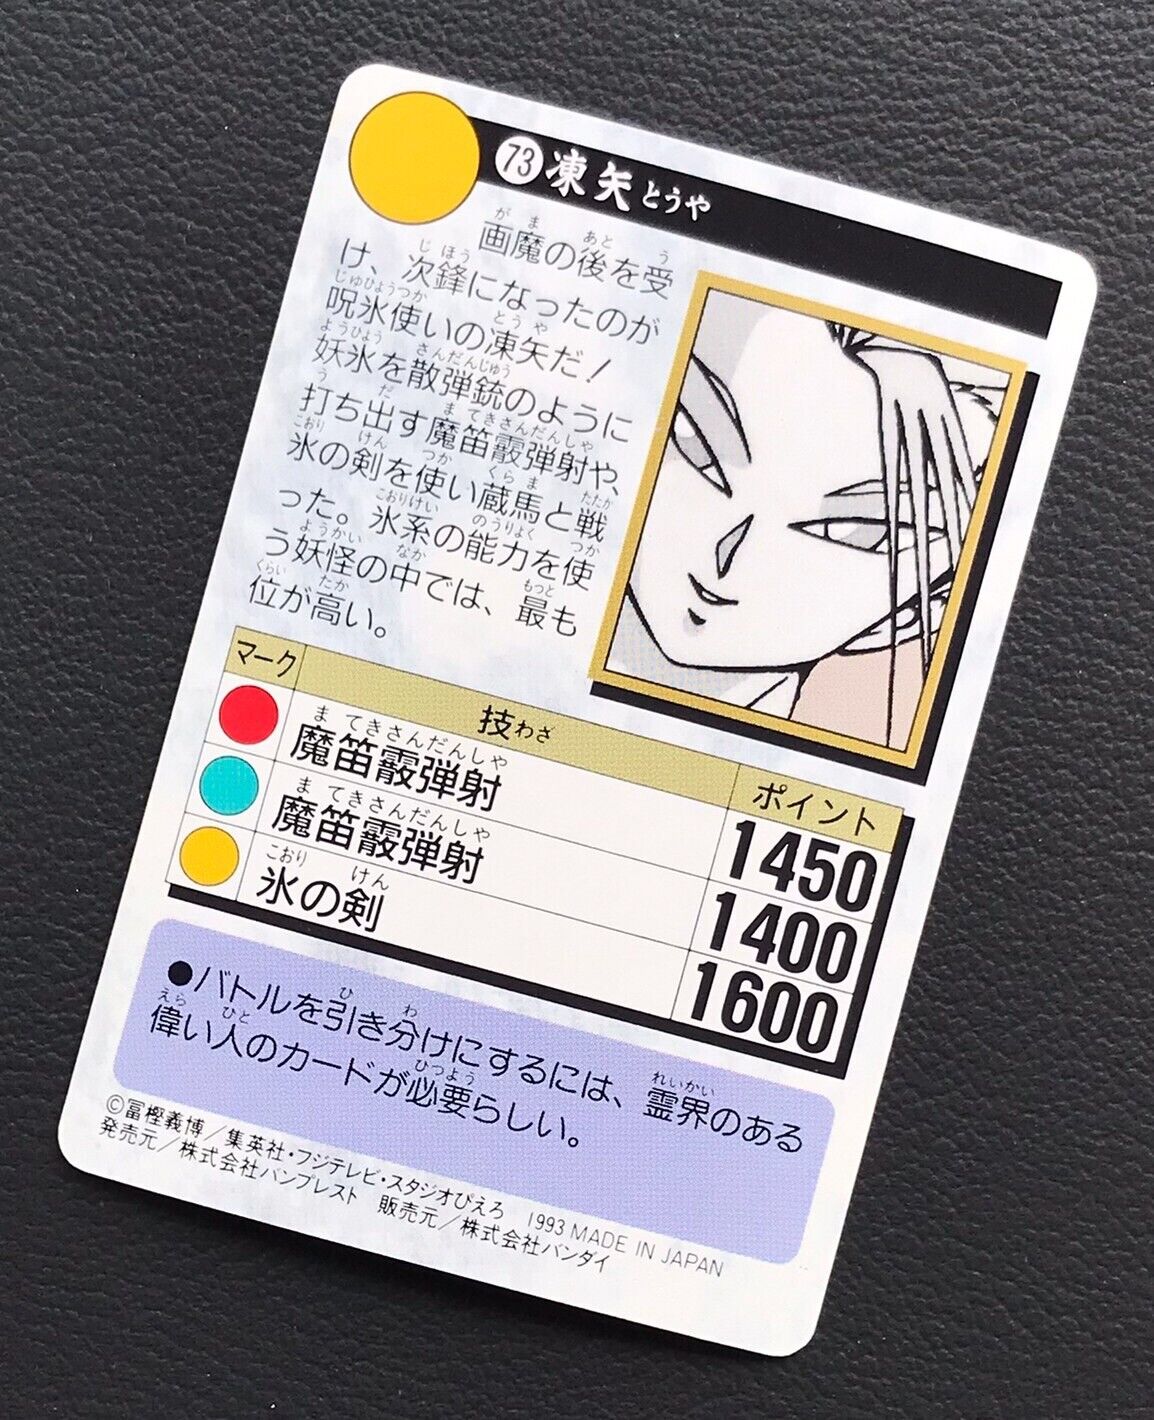 Touya YuYu Hakusho card BANDAI made in japan very rare F/S | eBay